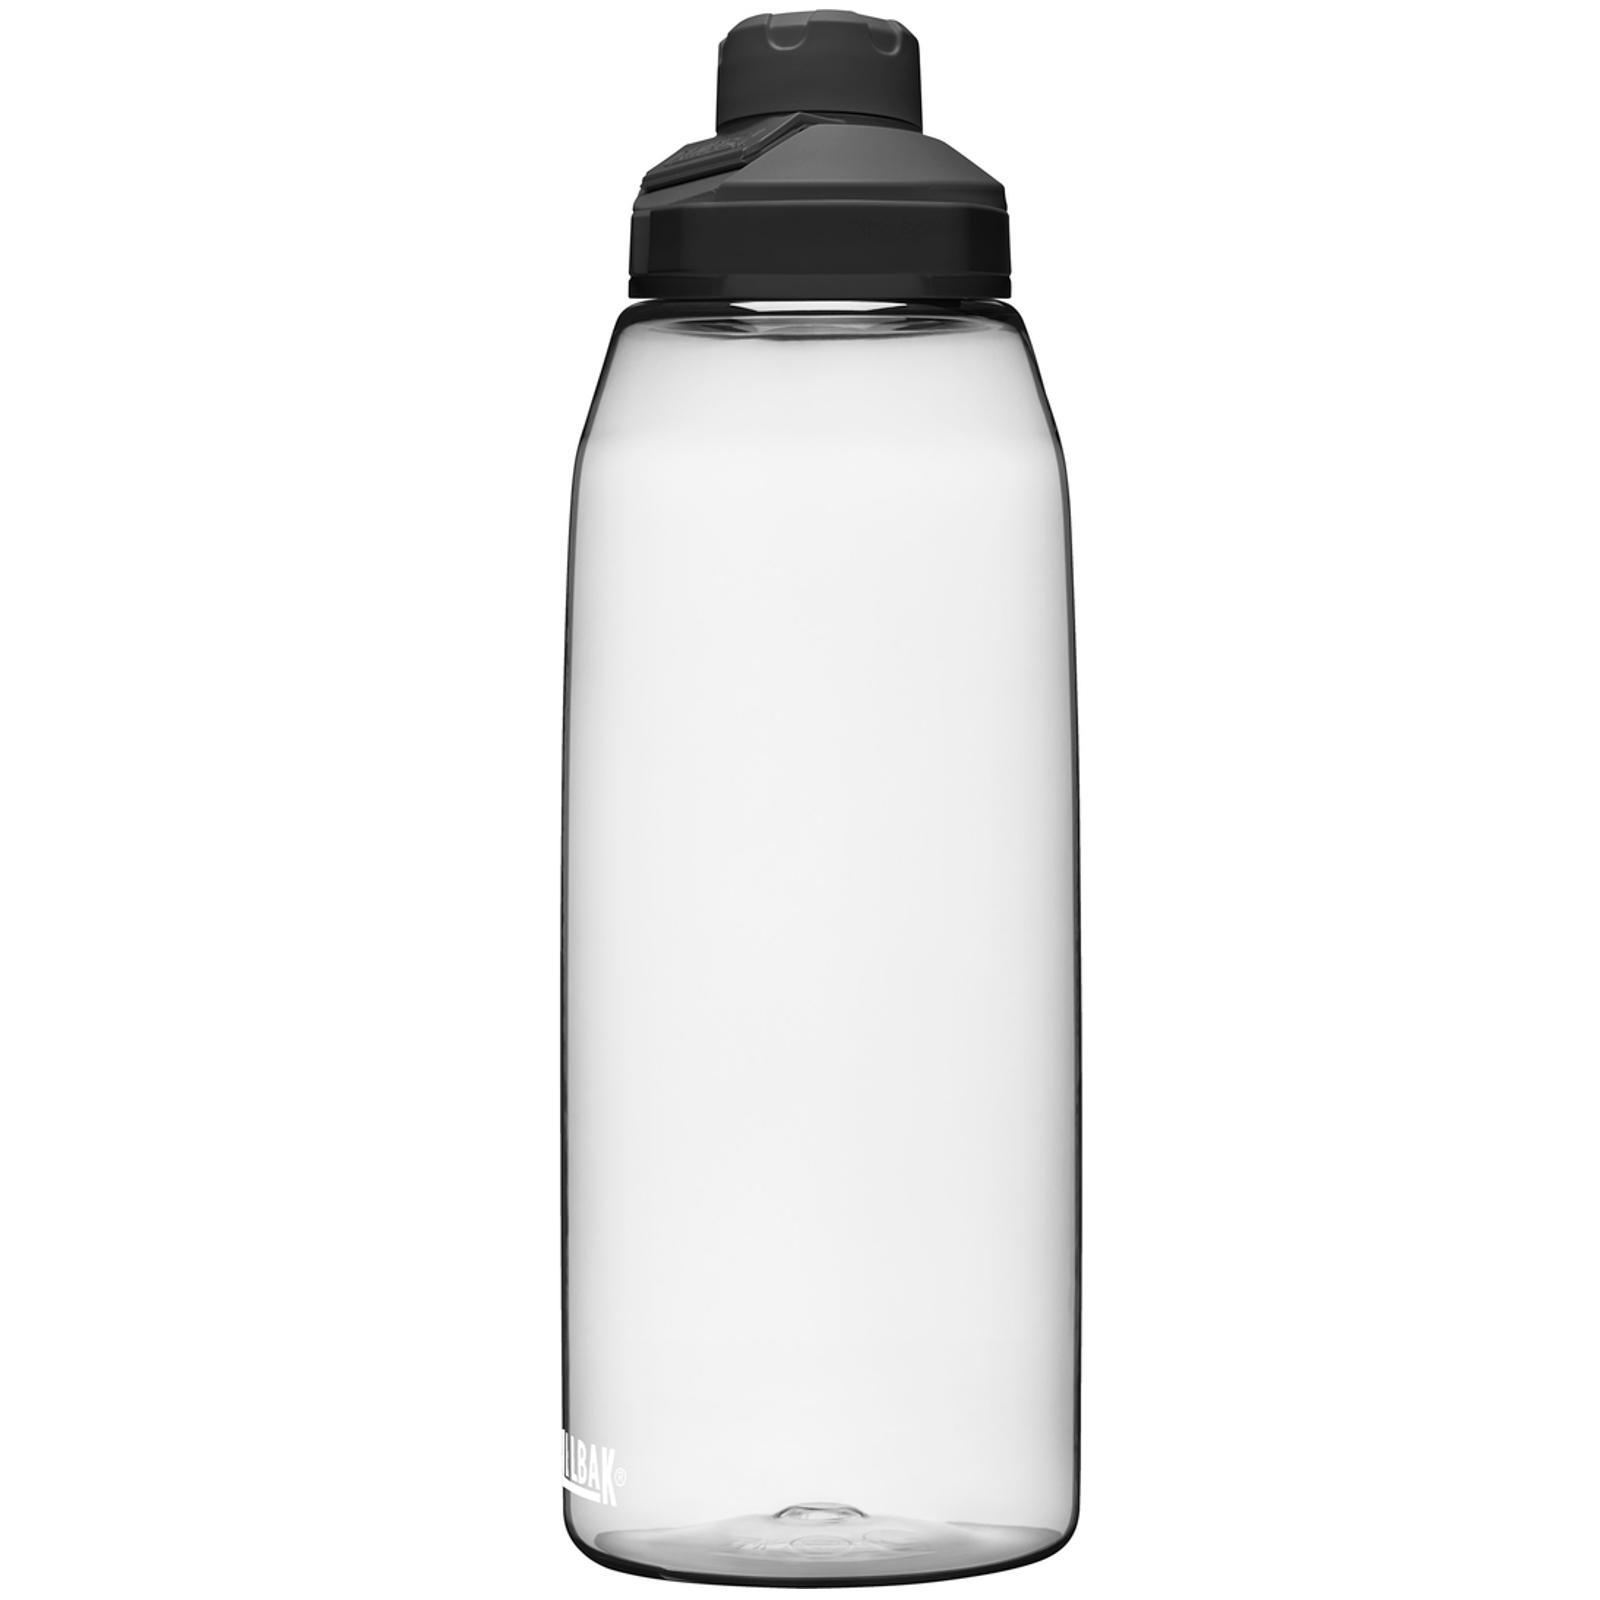 Camelbak Trinkflasche Chute Mag Magnet Verschluss Wasser Flasche Dicht 1,5 Liter